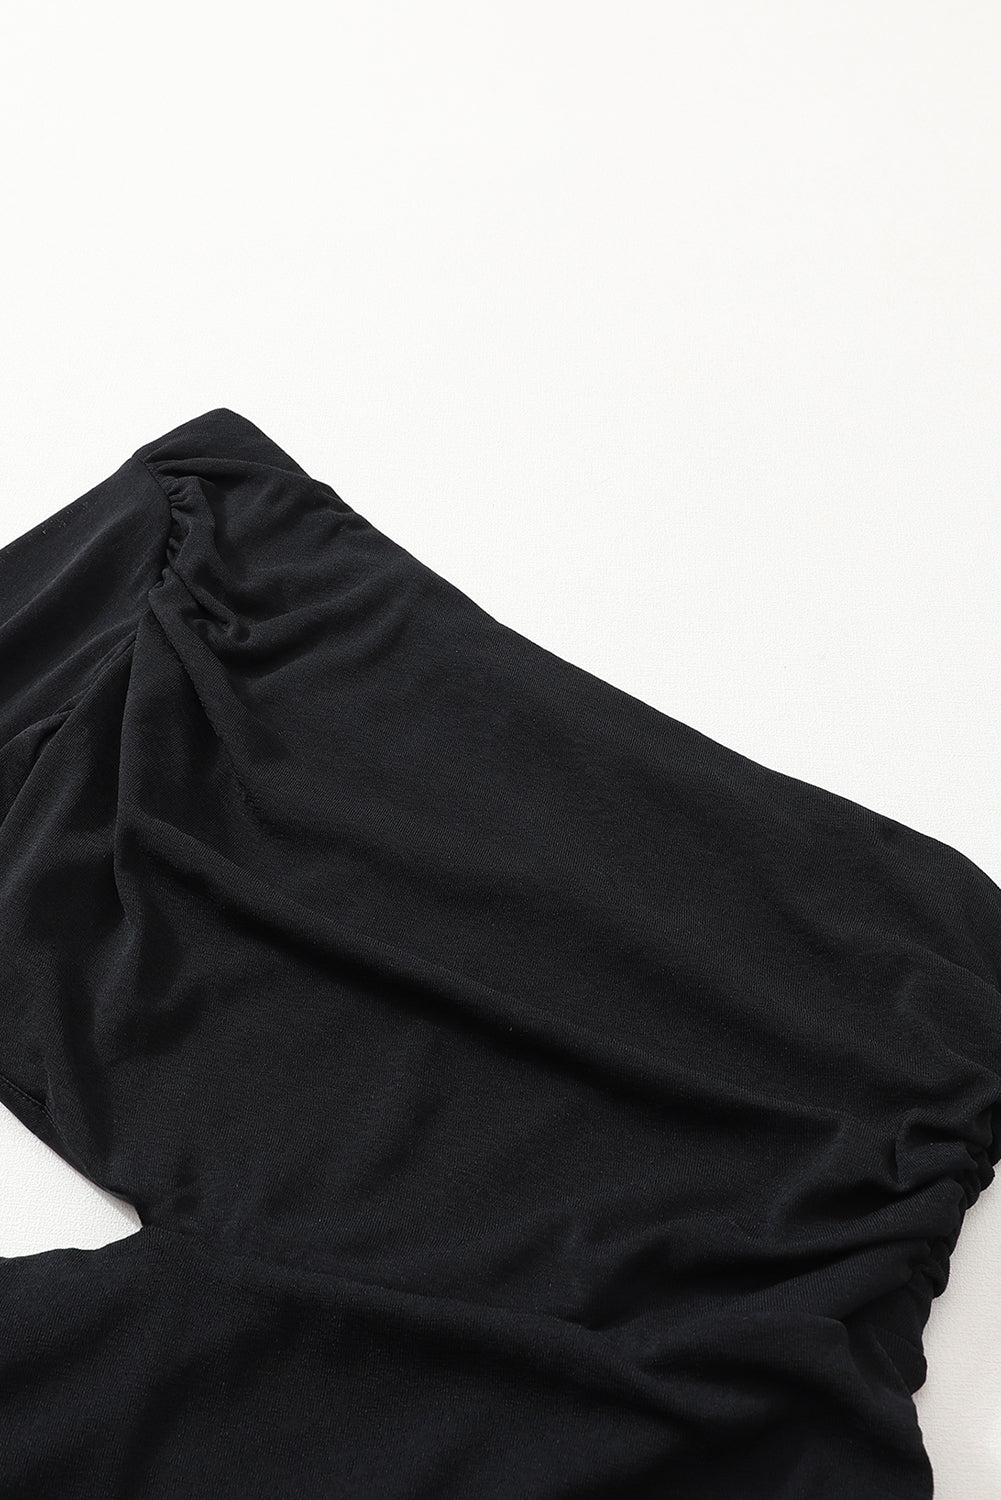 Crna asimetrična haljina uz izrez na jedno rame